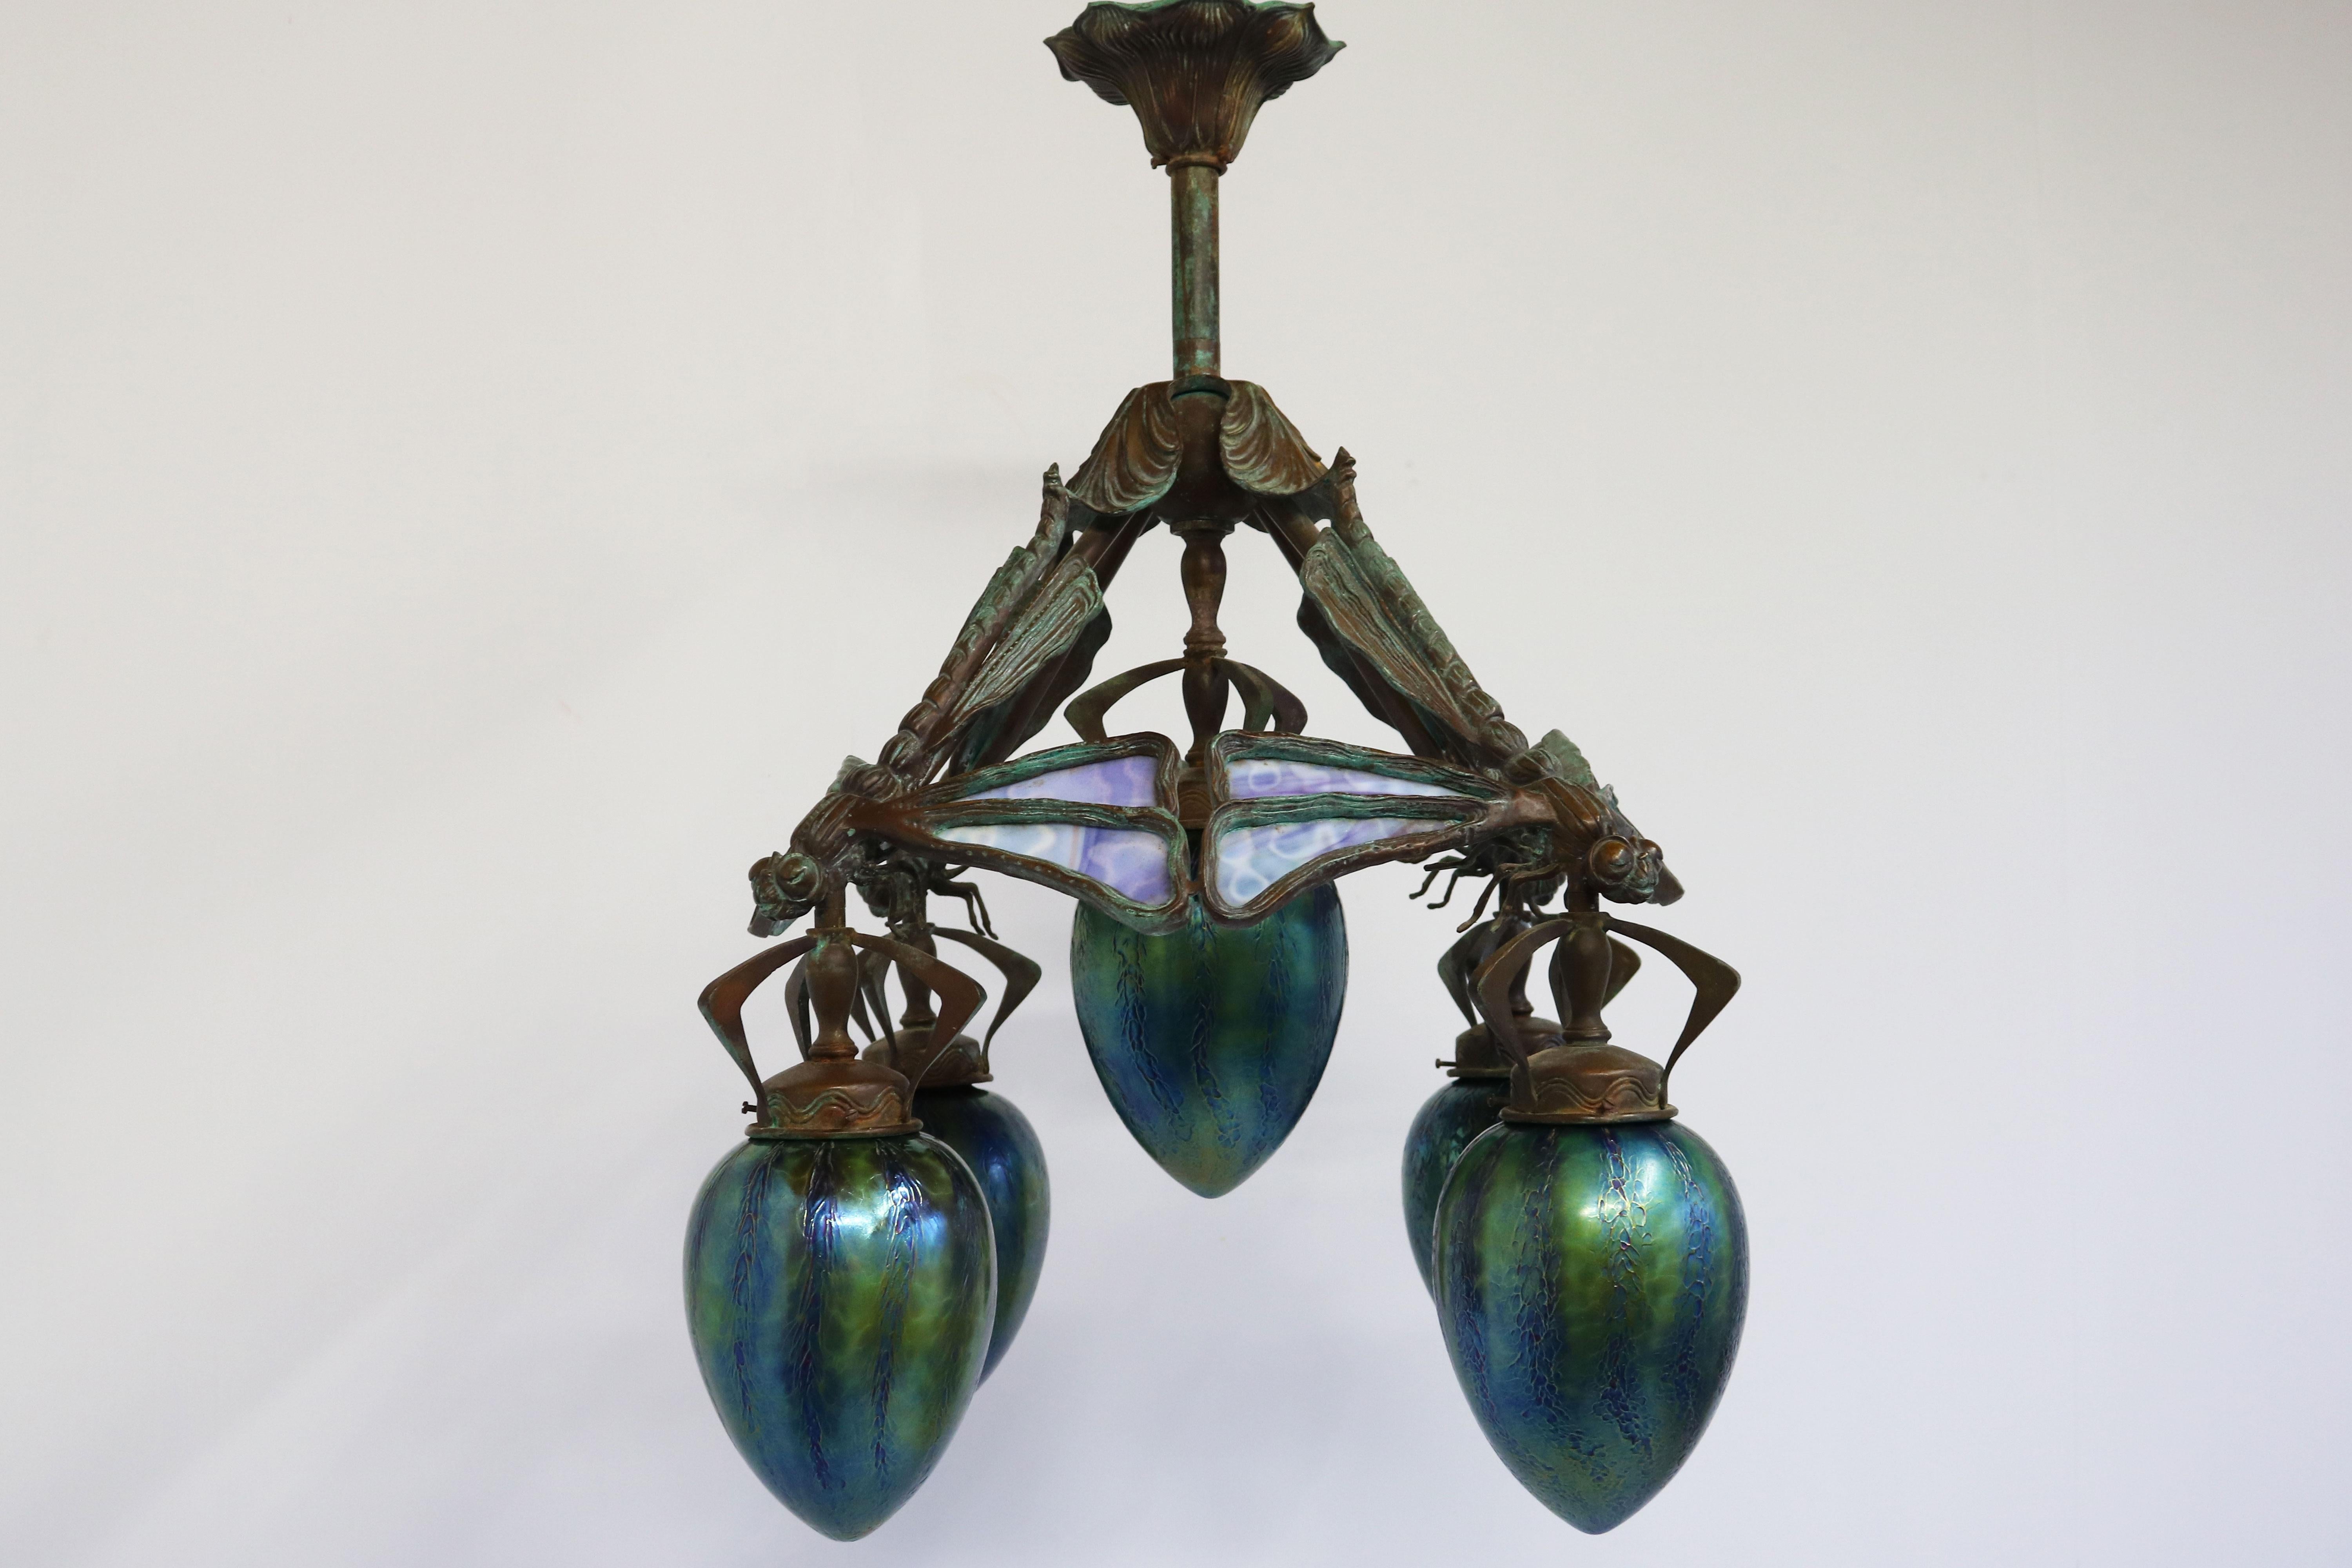 French Art Nouveau dragonfly chandelier 1900 Jugendstil Bronze Iridescent Glass 15